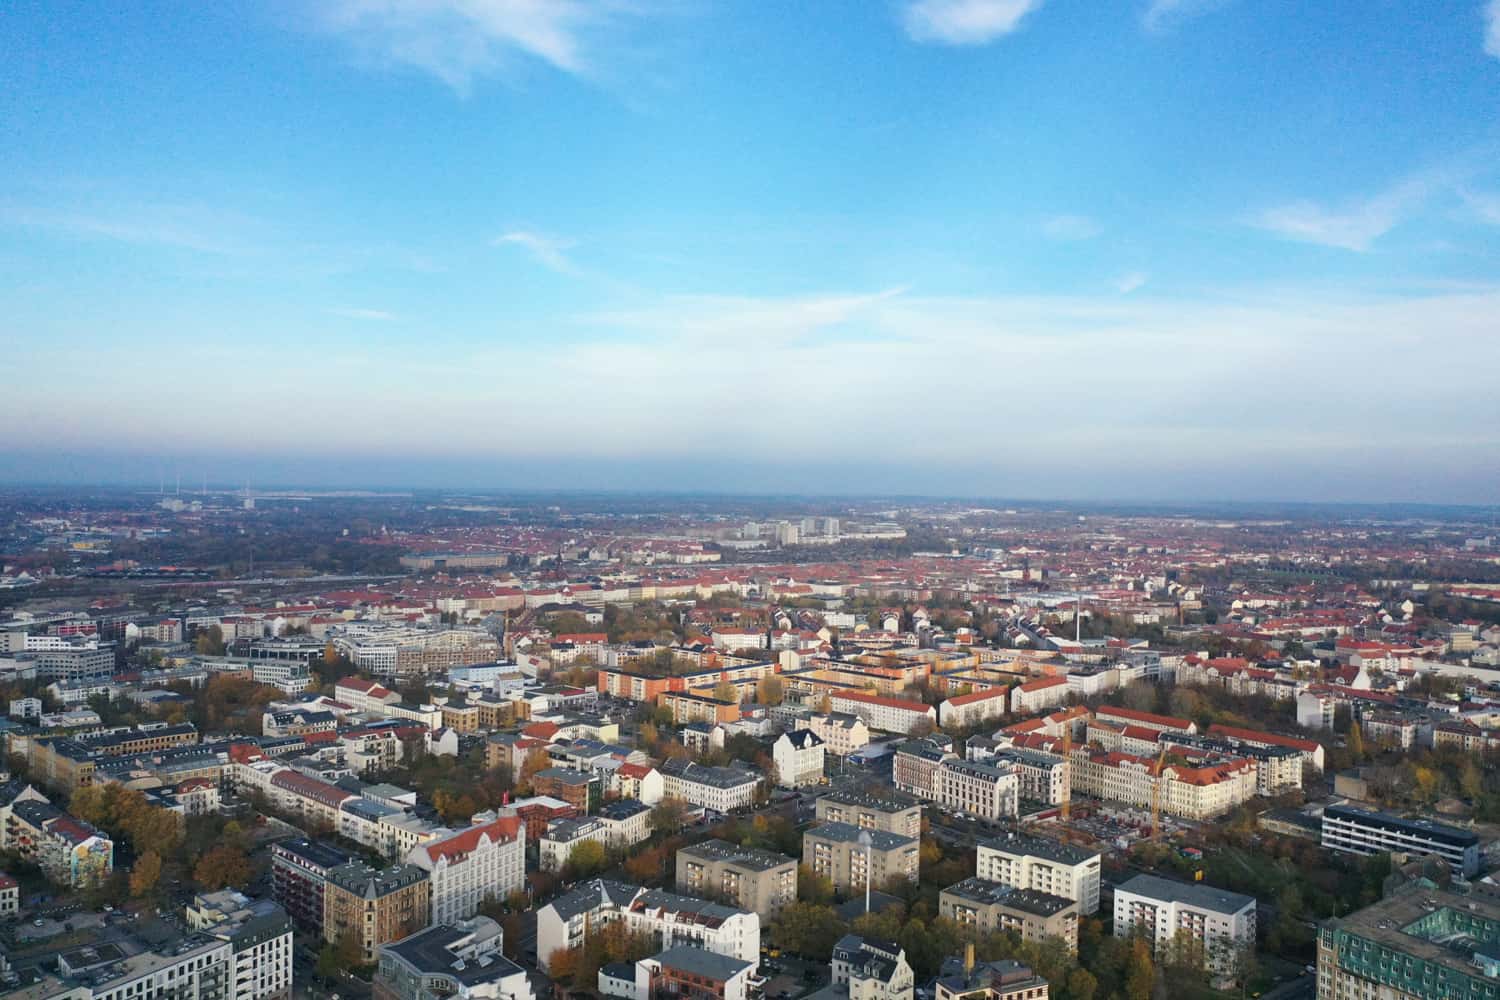 Blick auf Leipzig, aufgenommen von einer Drohne